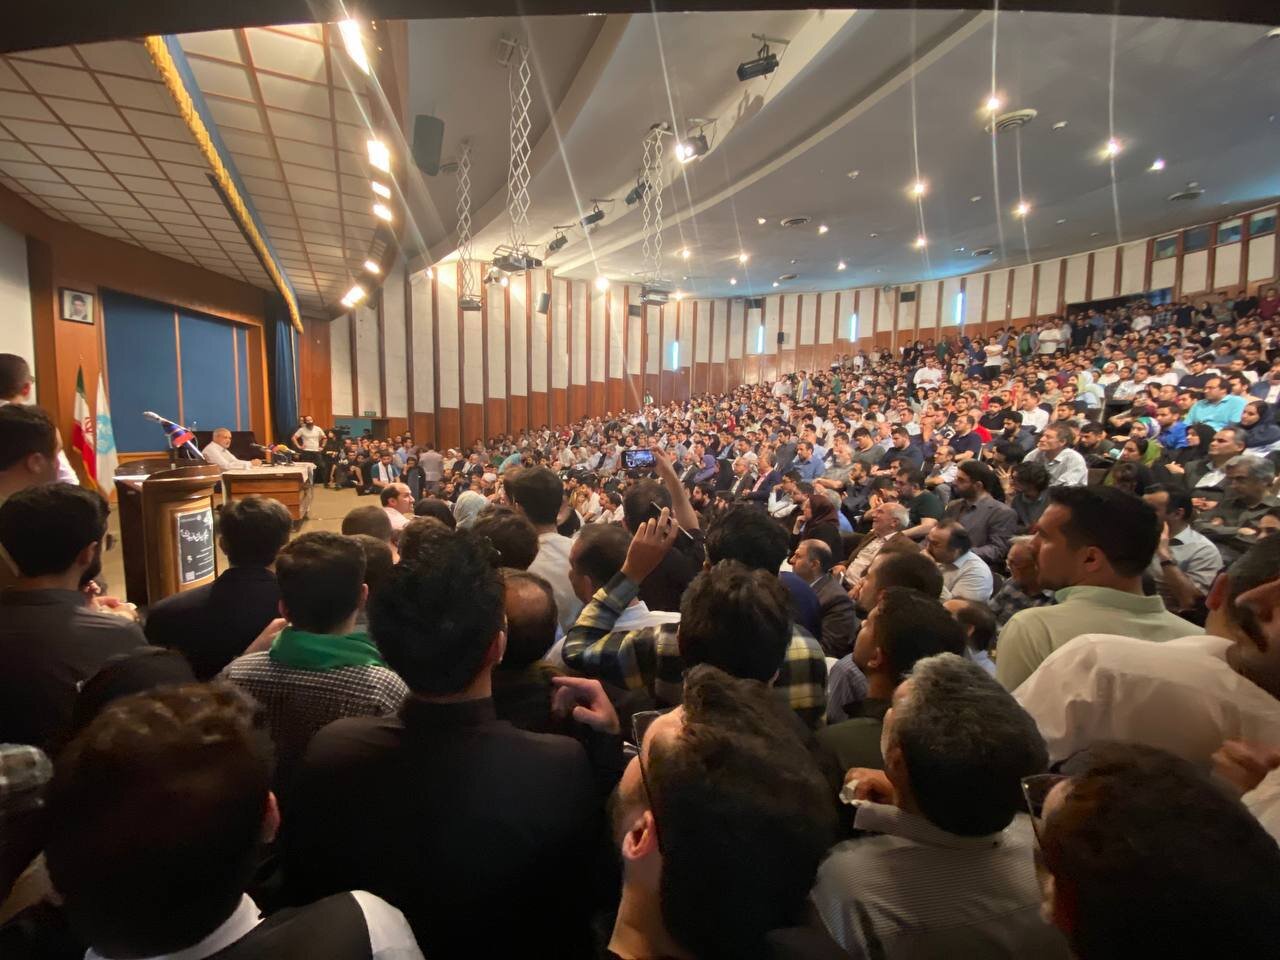 عکس وایرال شده از سیل دانشجویان در زمان حضور پزشکیان در دانشگاه تهران